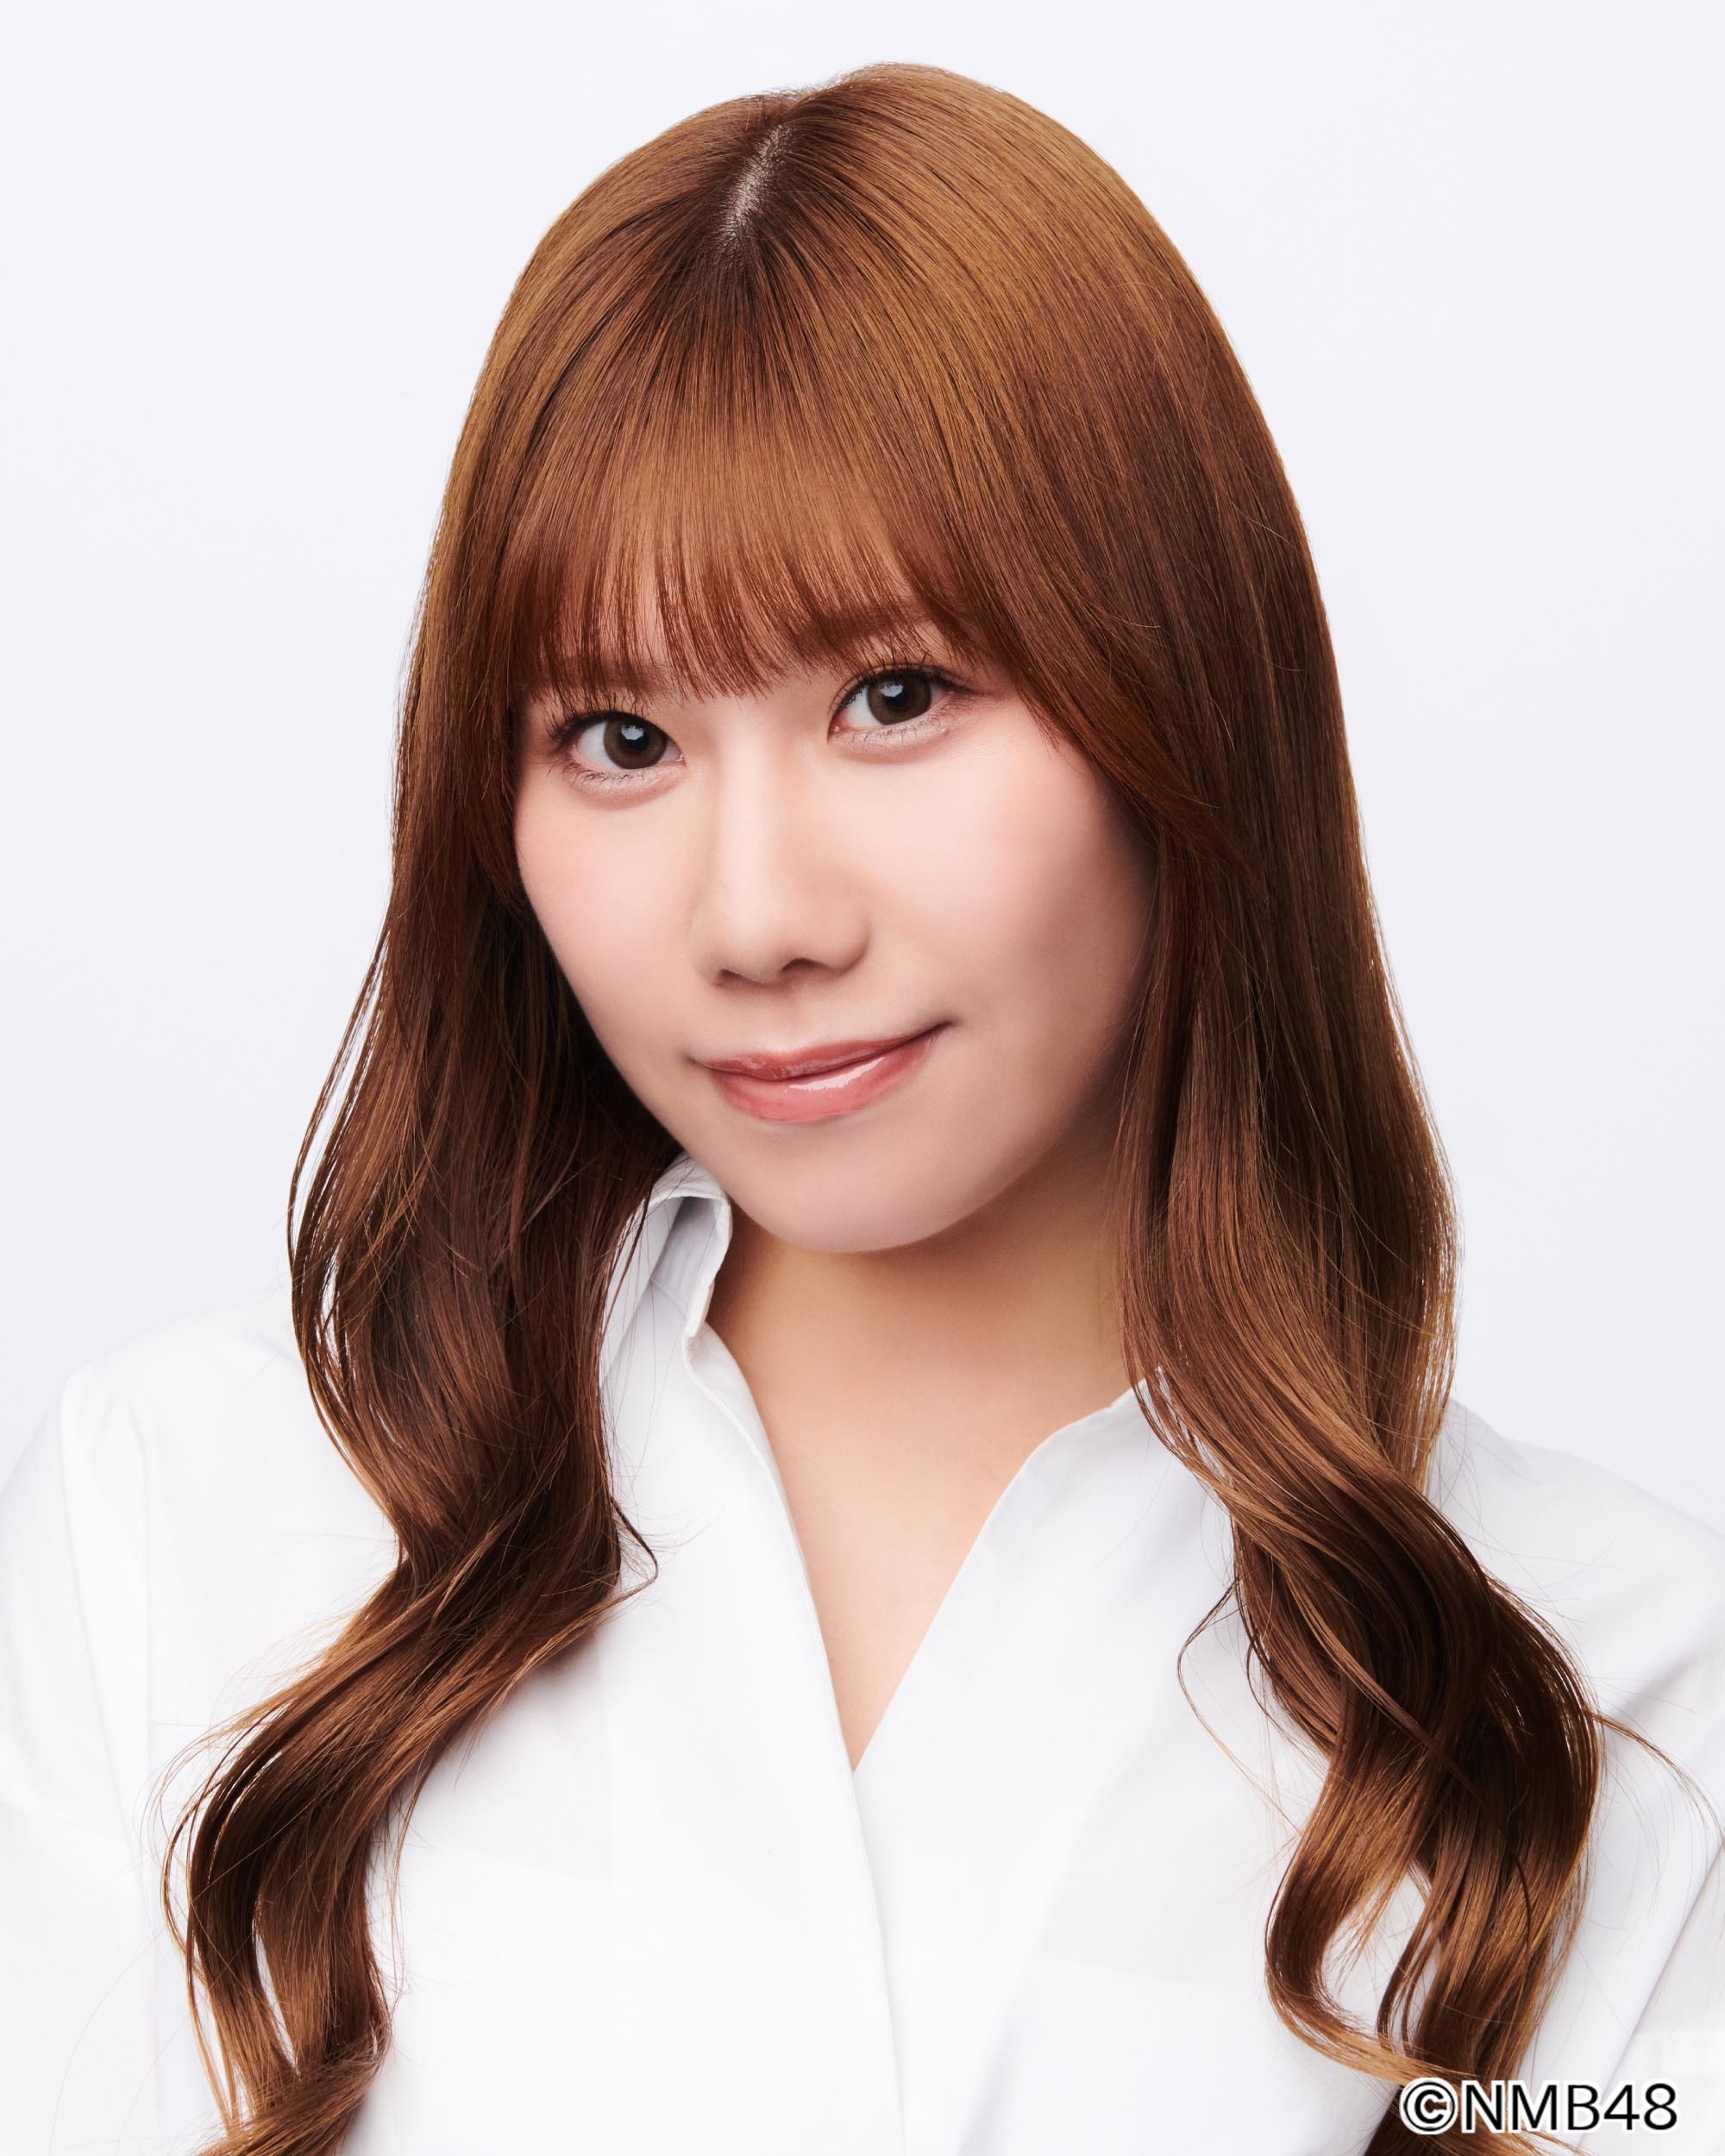 NMB48 Team N Members Profile (Updated!) - Kpop Profiles